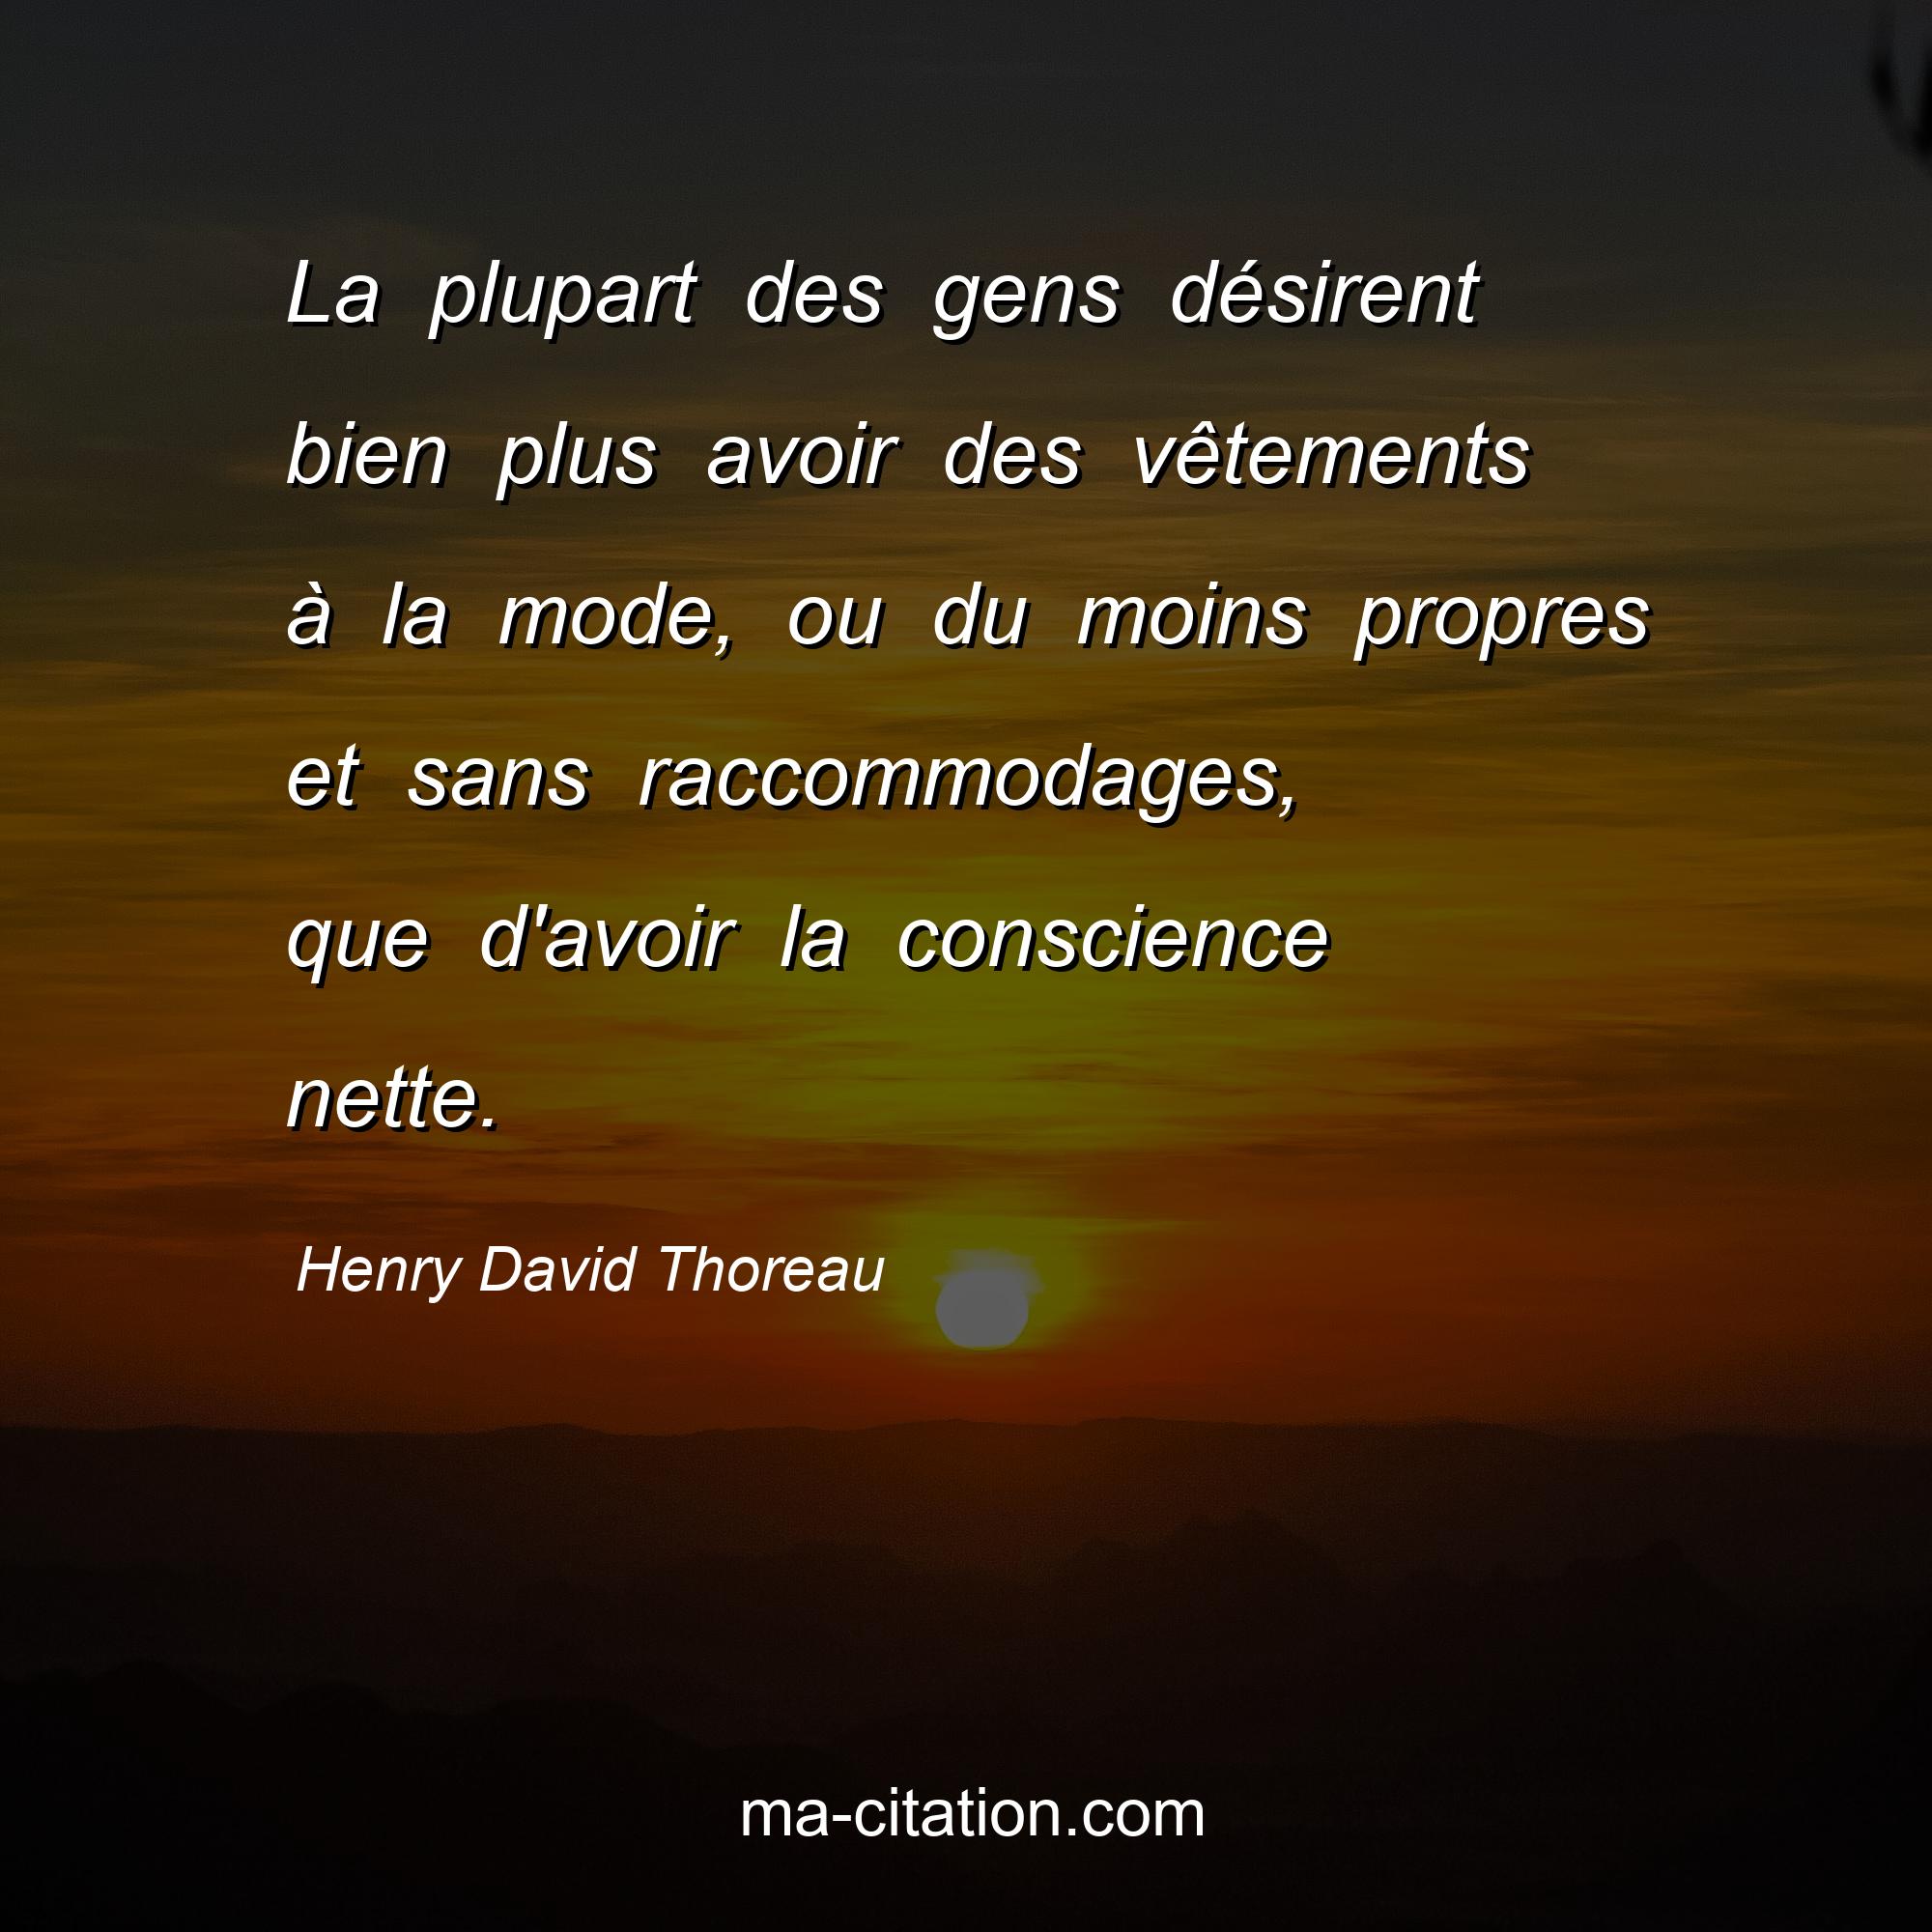 Henry David Thoreau : La plupart des gens désirent bien plus avoir des vêtements à la mode, ou du moins propres et sans raccommodages, que d'avoir la conscience nette.